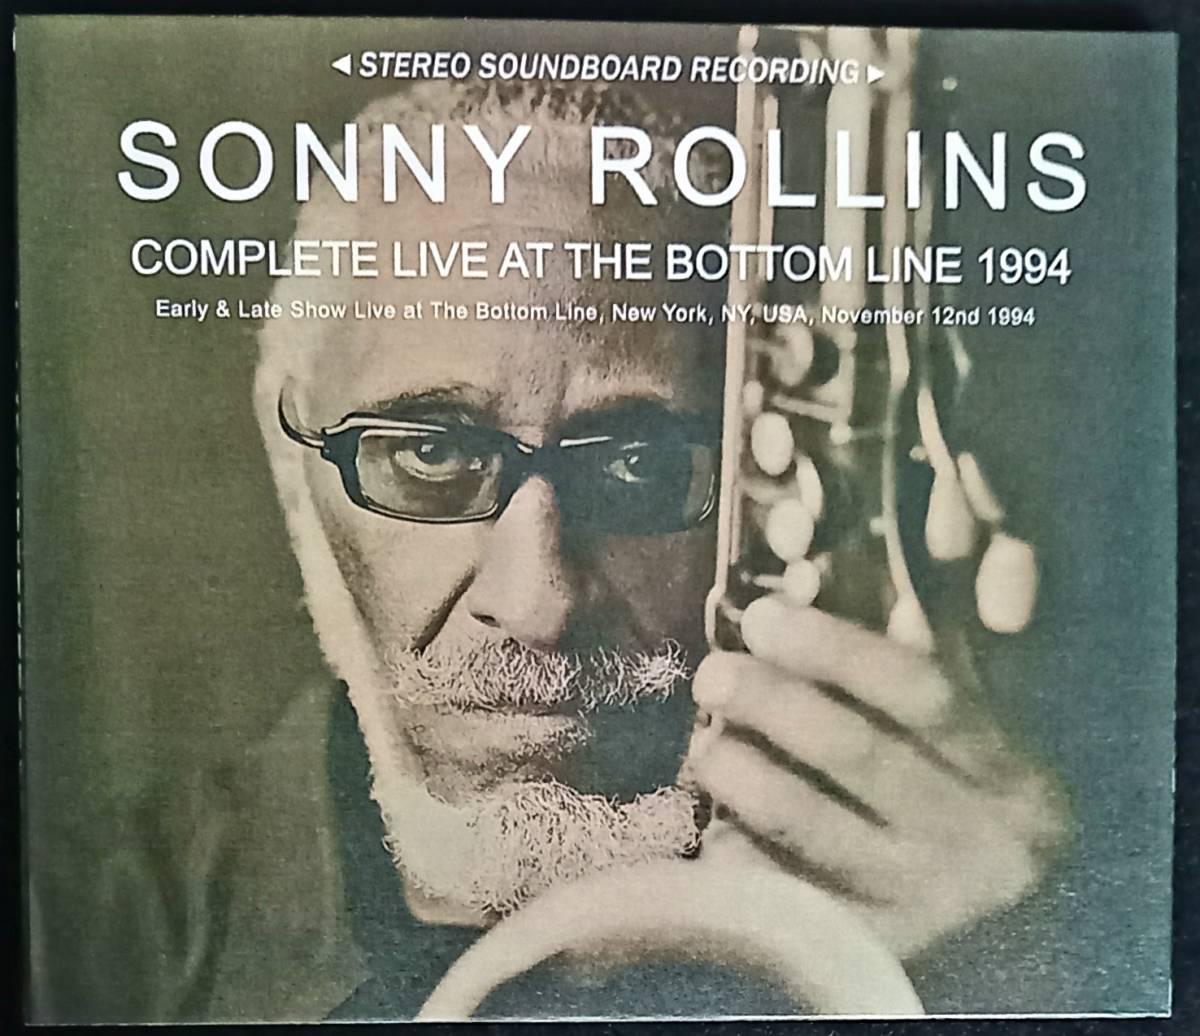 Sonny Rollins ソニーロリンズ NY.USA 1994 コンプリート ボトムライン 3CD-R ボブクランショウ クリフトンアンダーソン ジャズサックス 